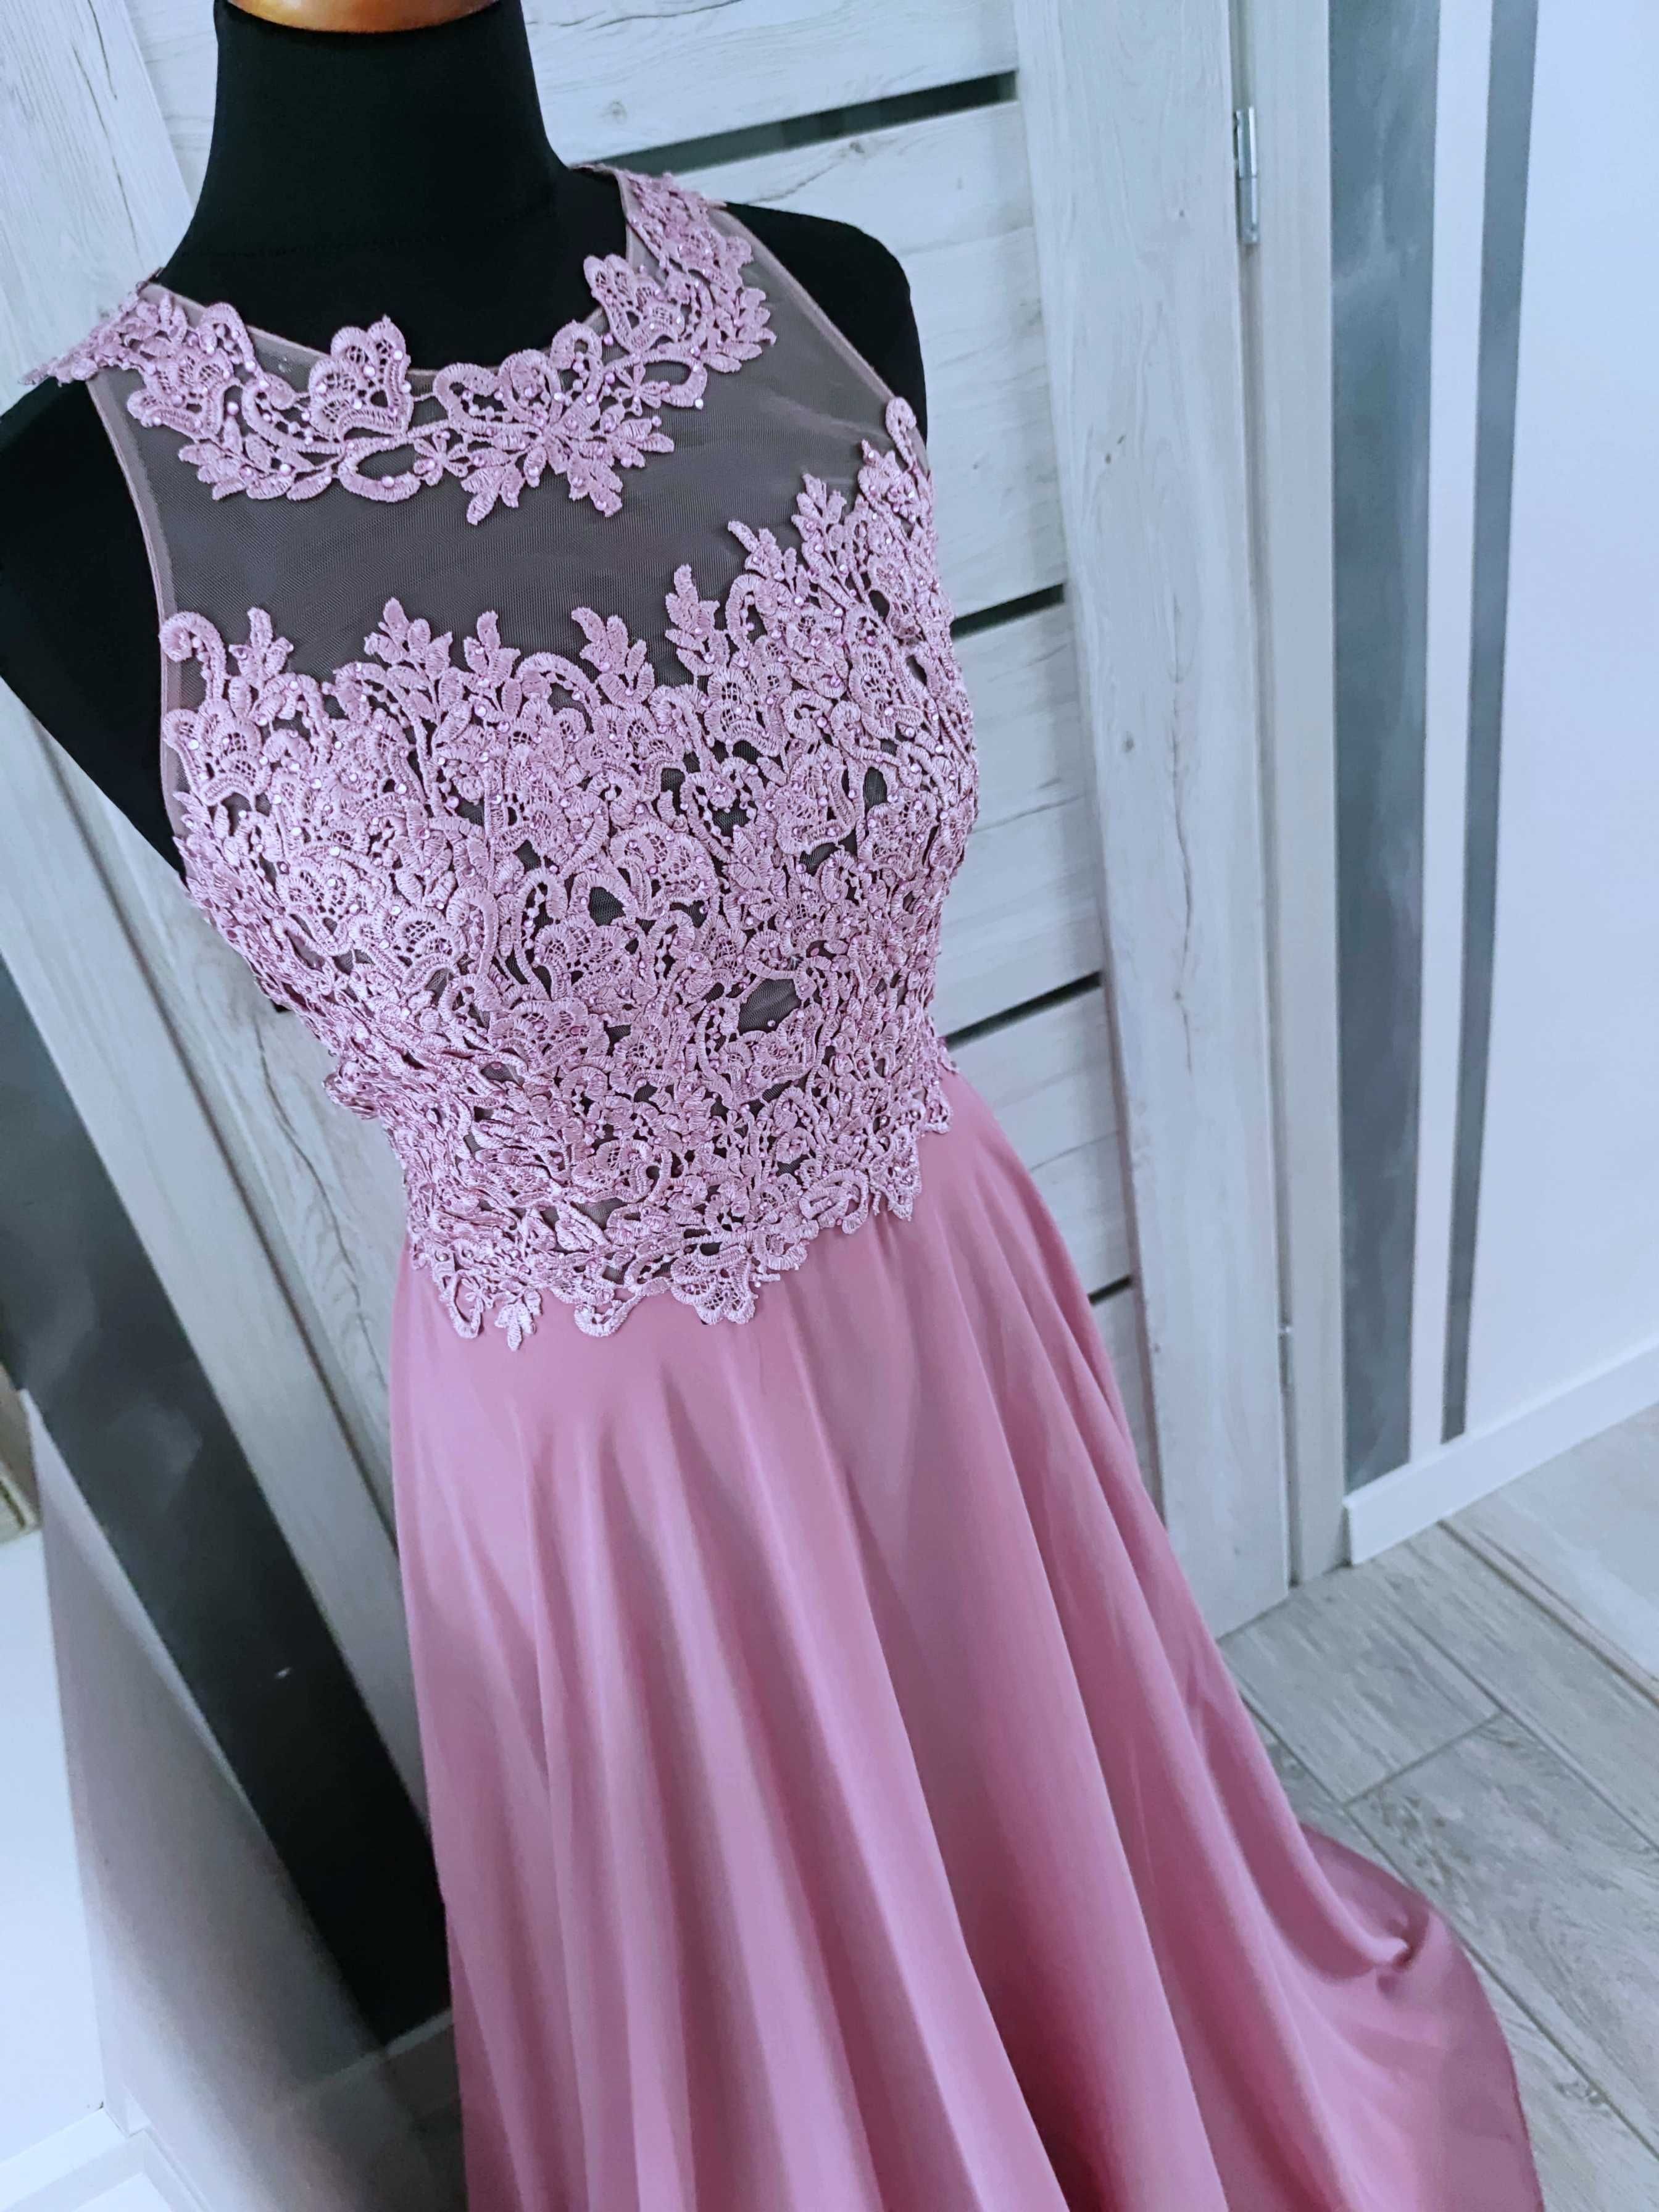 rozmiar xl różowa balowa suknia długa wieczorowa z koronką 42 44